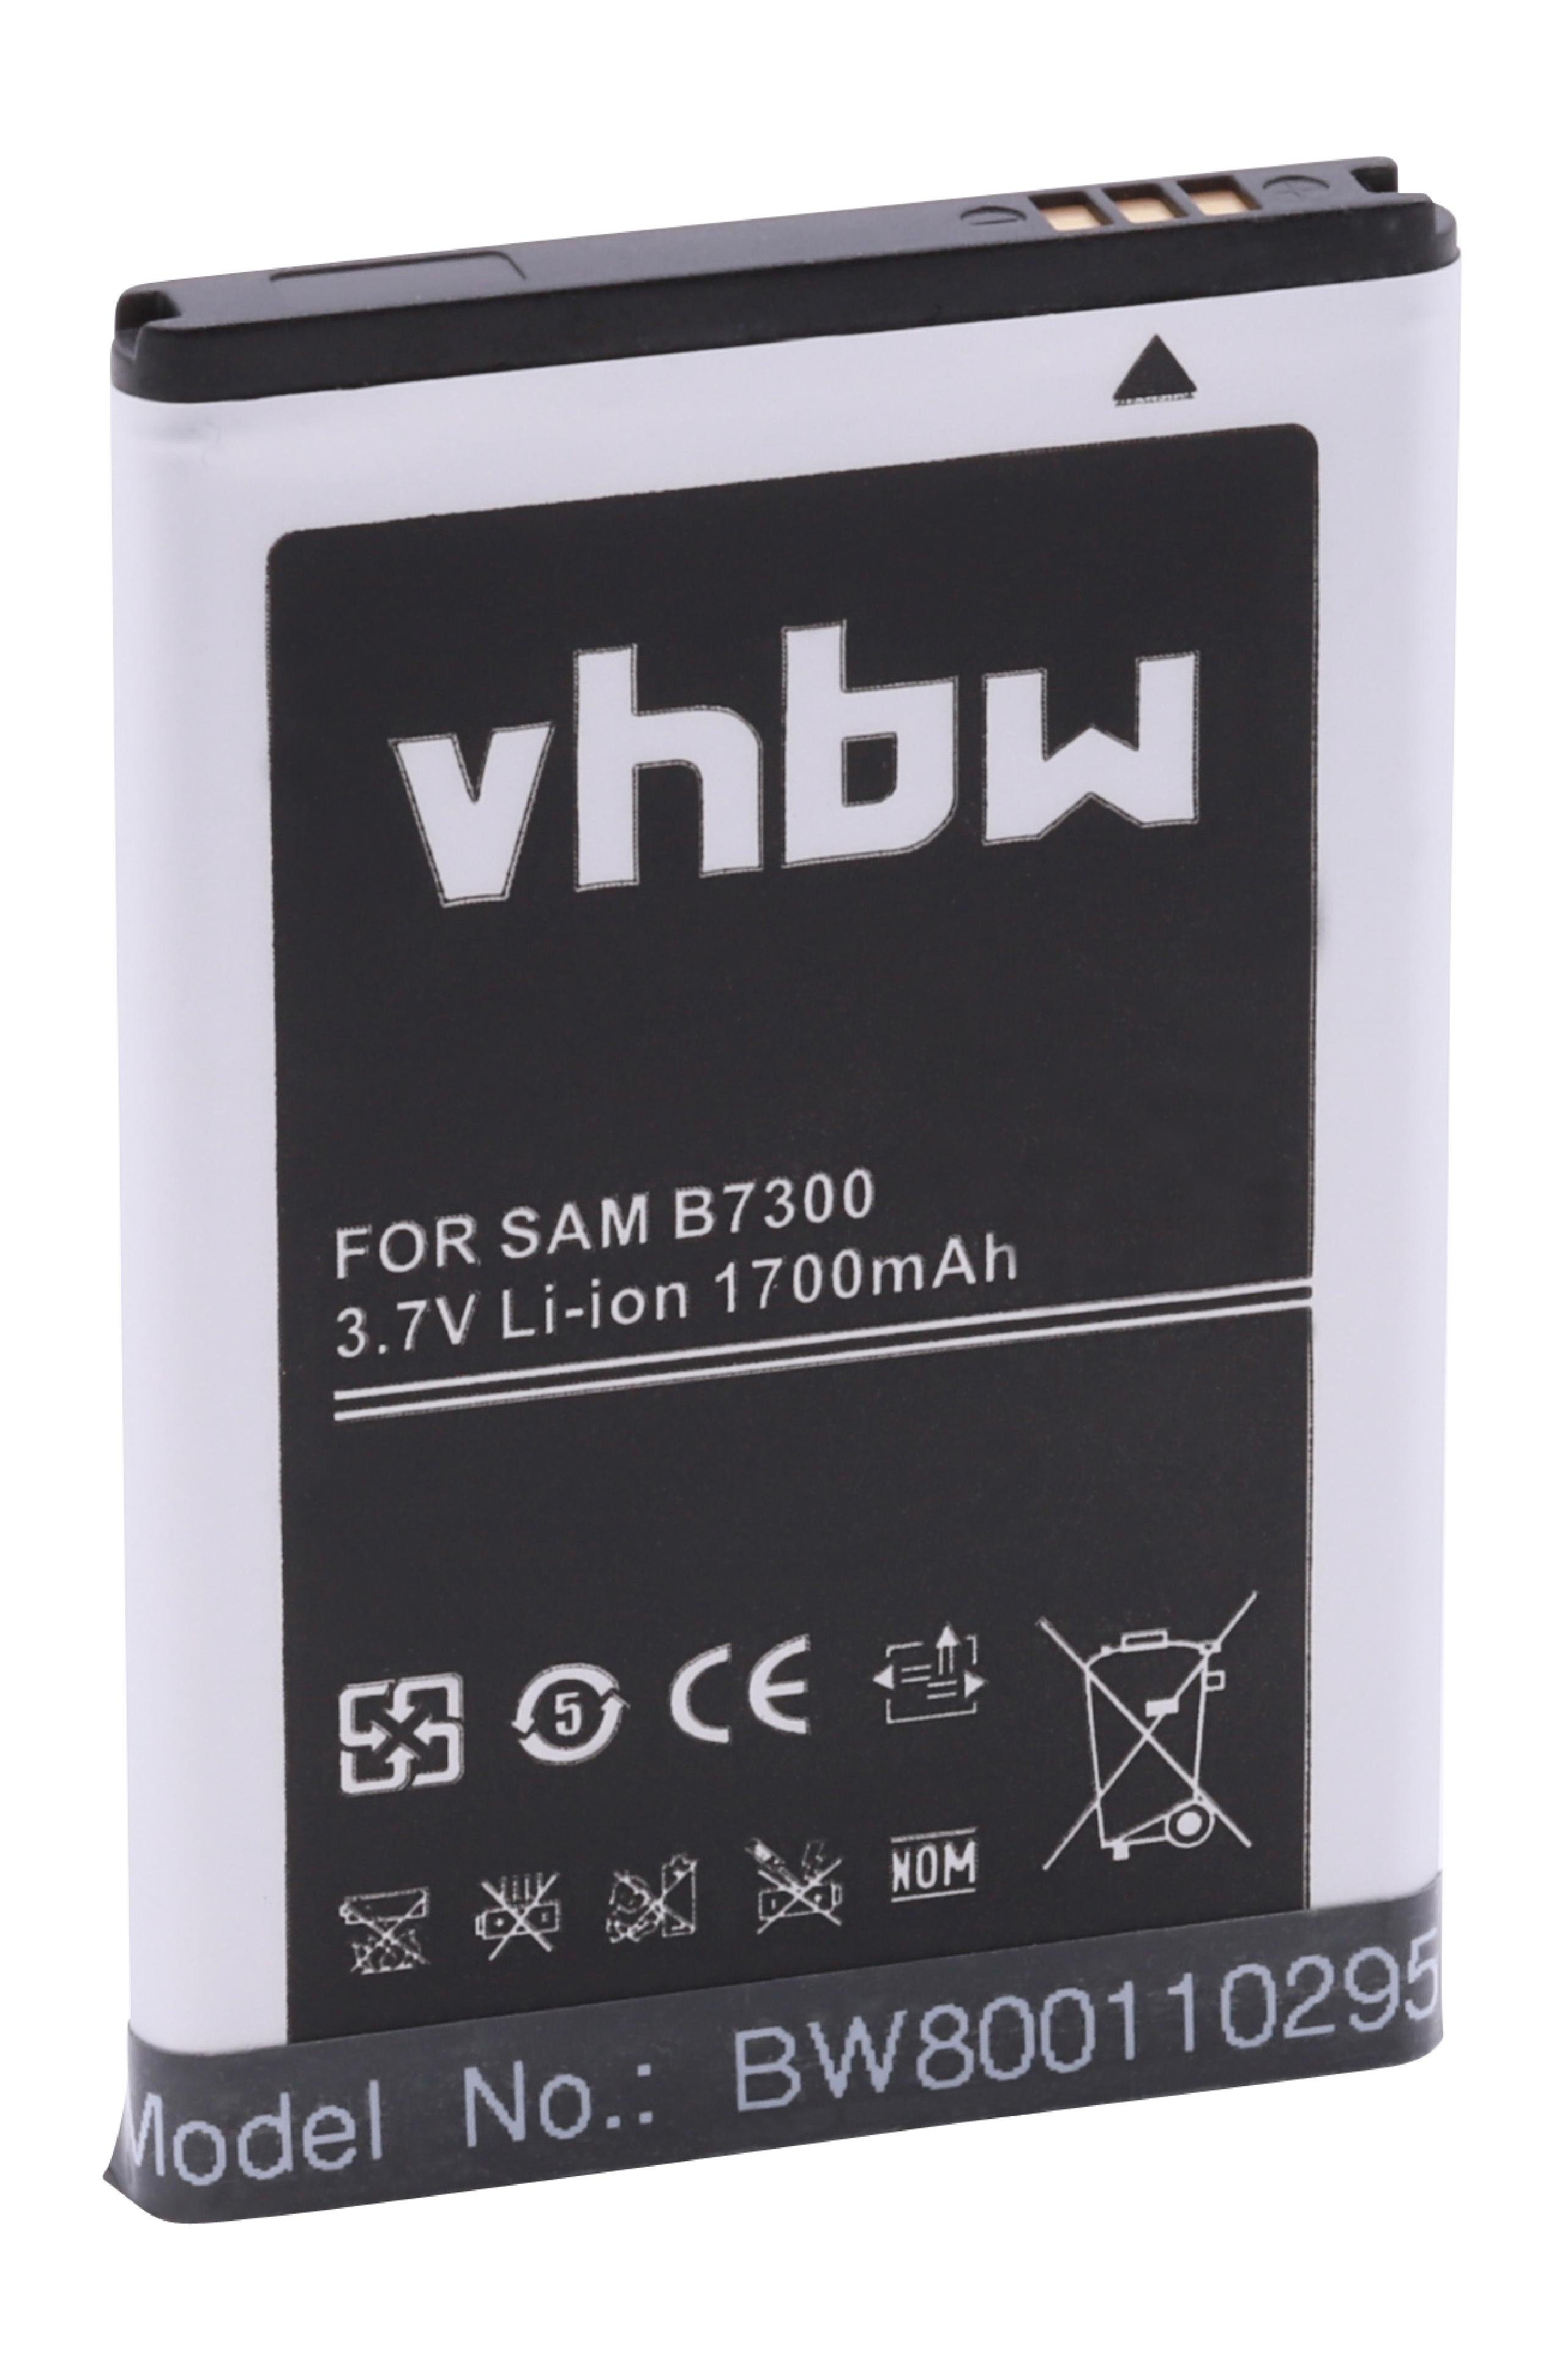 vhbw passend für Samsung GT-S5800 Galaxy 3, GT-I8910C, GT-I8910U, GT-S5800, Smartphone-Akku 1700 mAh